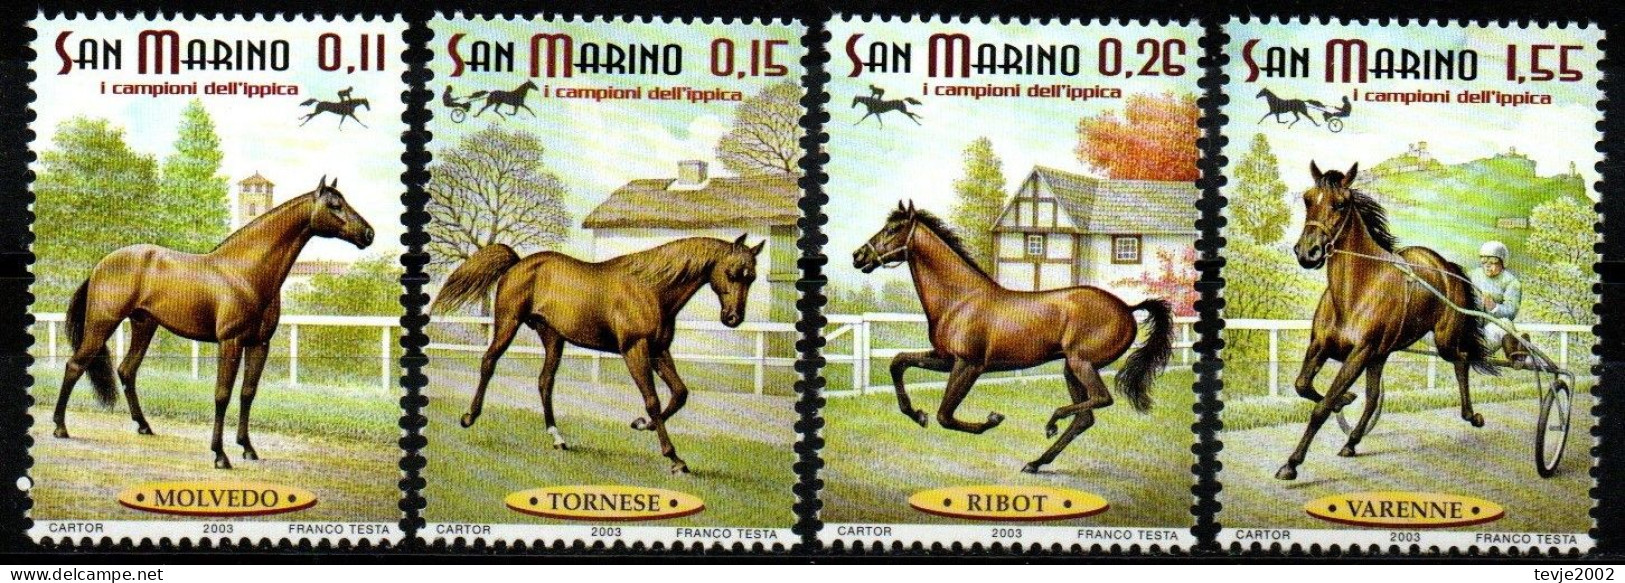 San Marino 2003 - Mi.Nr. 2087 - 2090 - Postfrisch MNH - Tiere Animals Pferde Horses - Cavalli